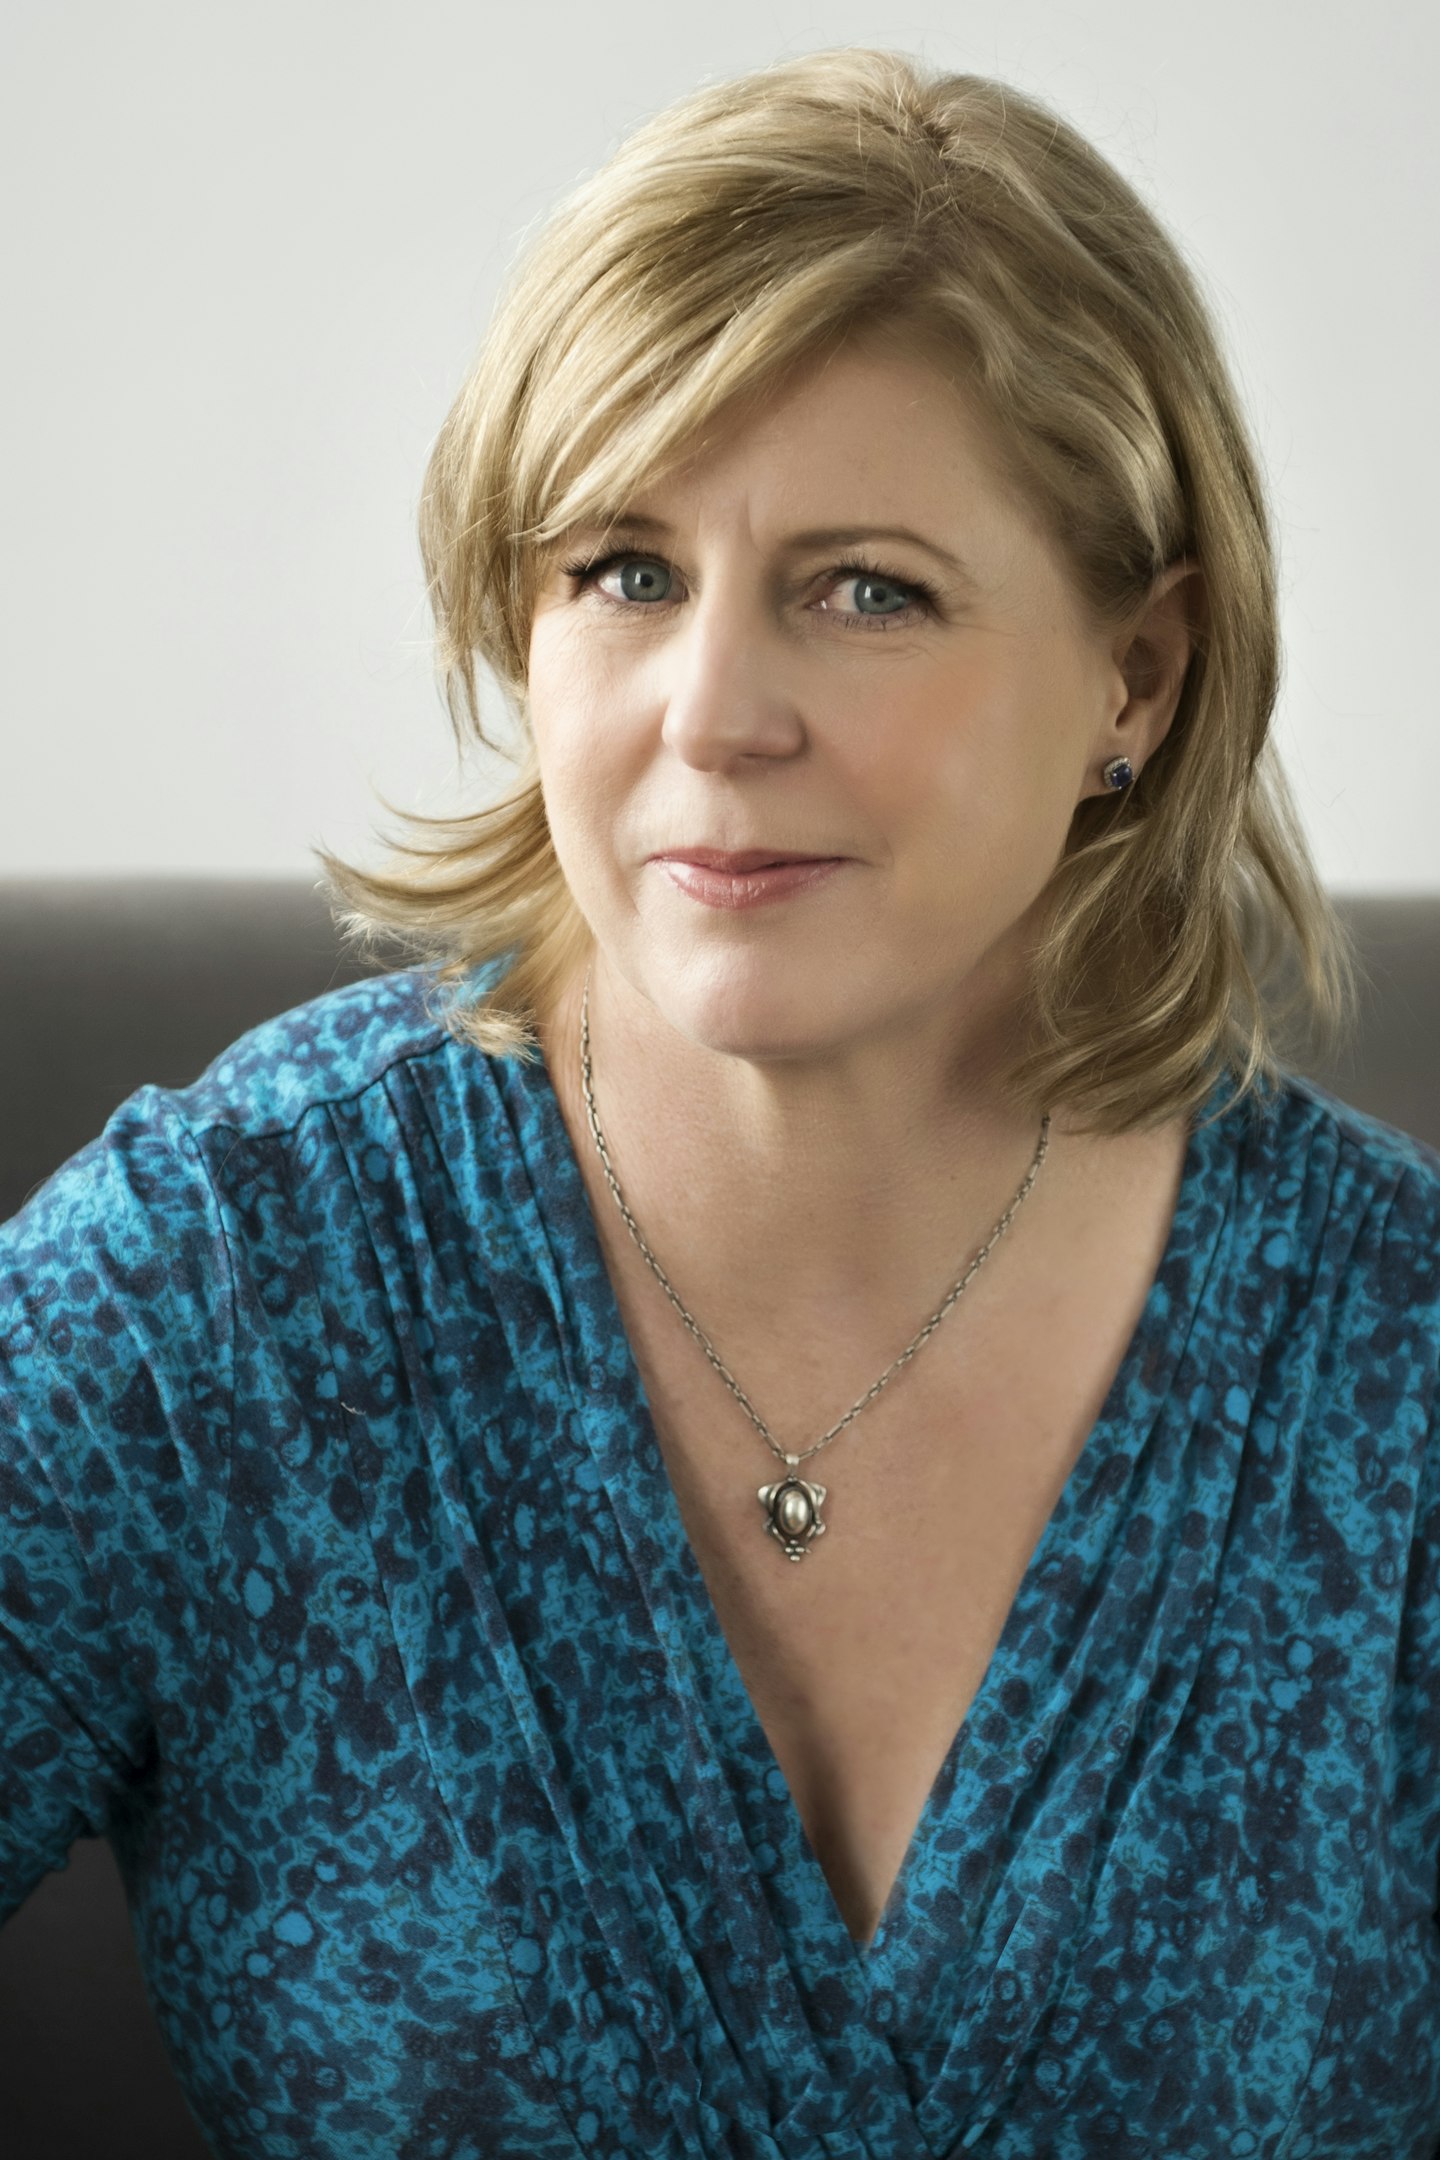 Author Liane Moriarty